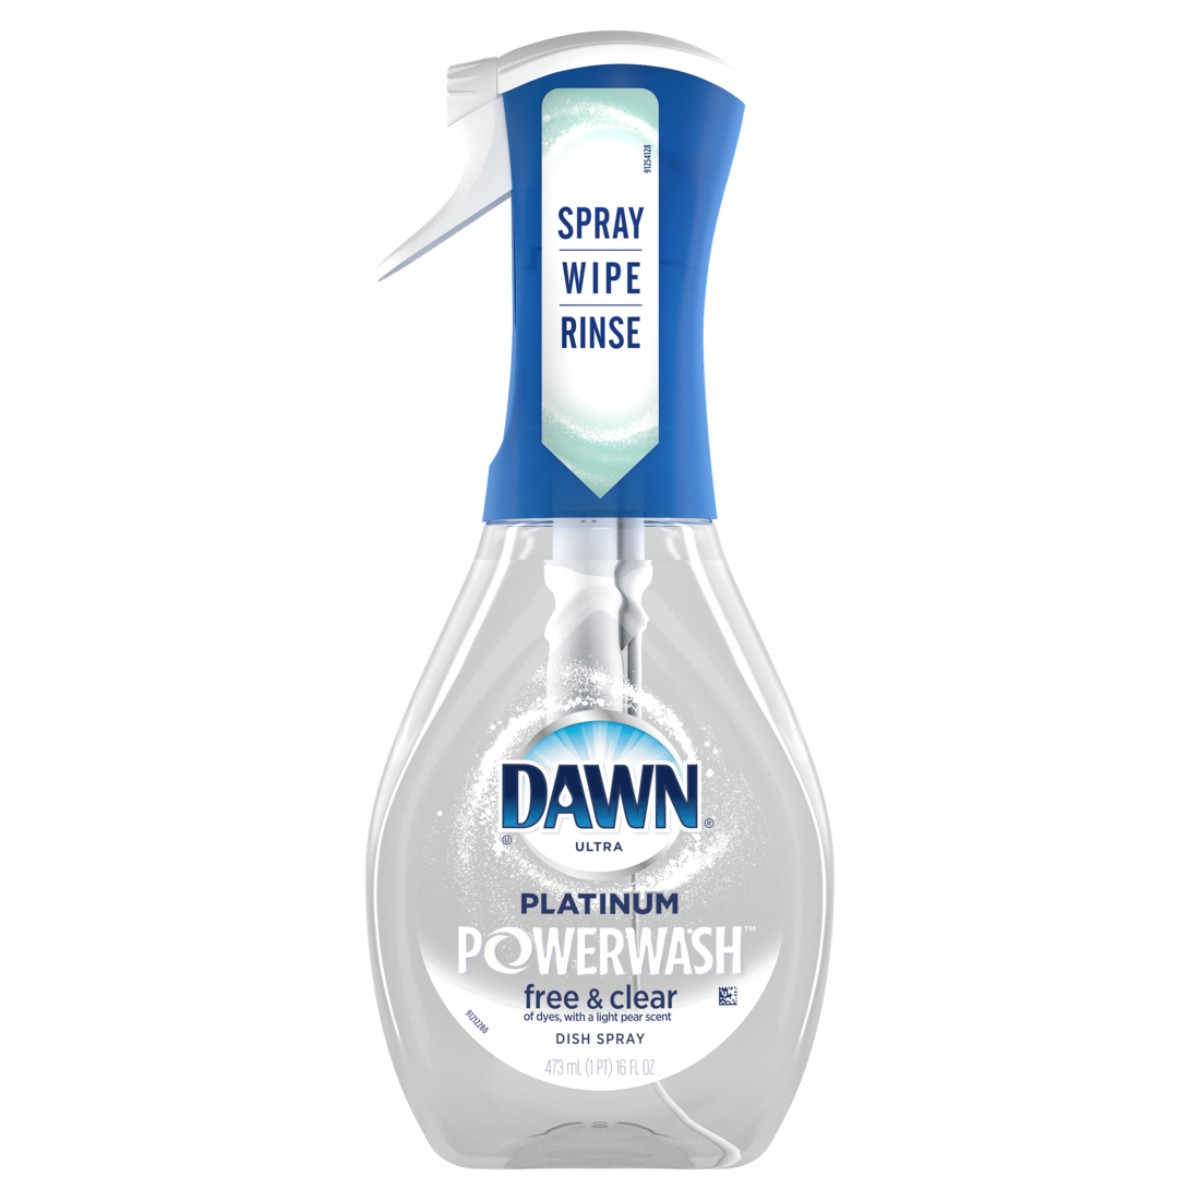 Shop Dawn Dawn Powerwash, Tide Power Pods, and Mr. Clean Clean Freak at